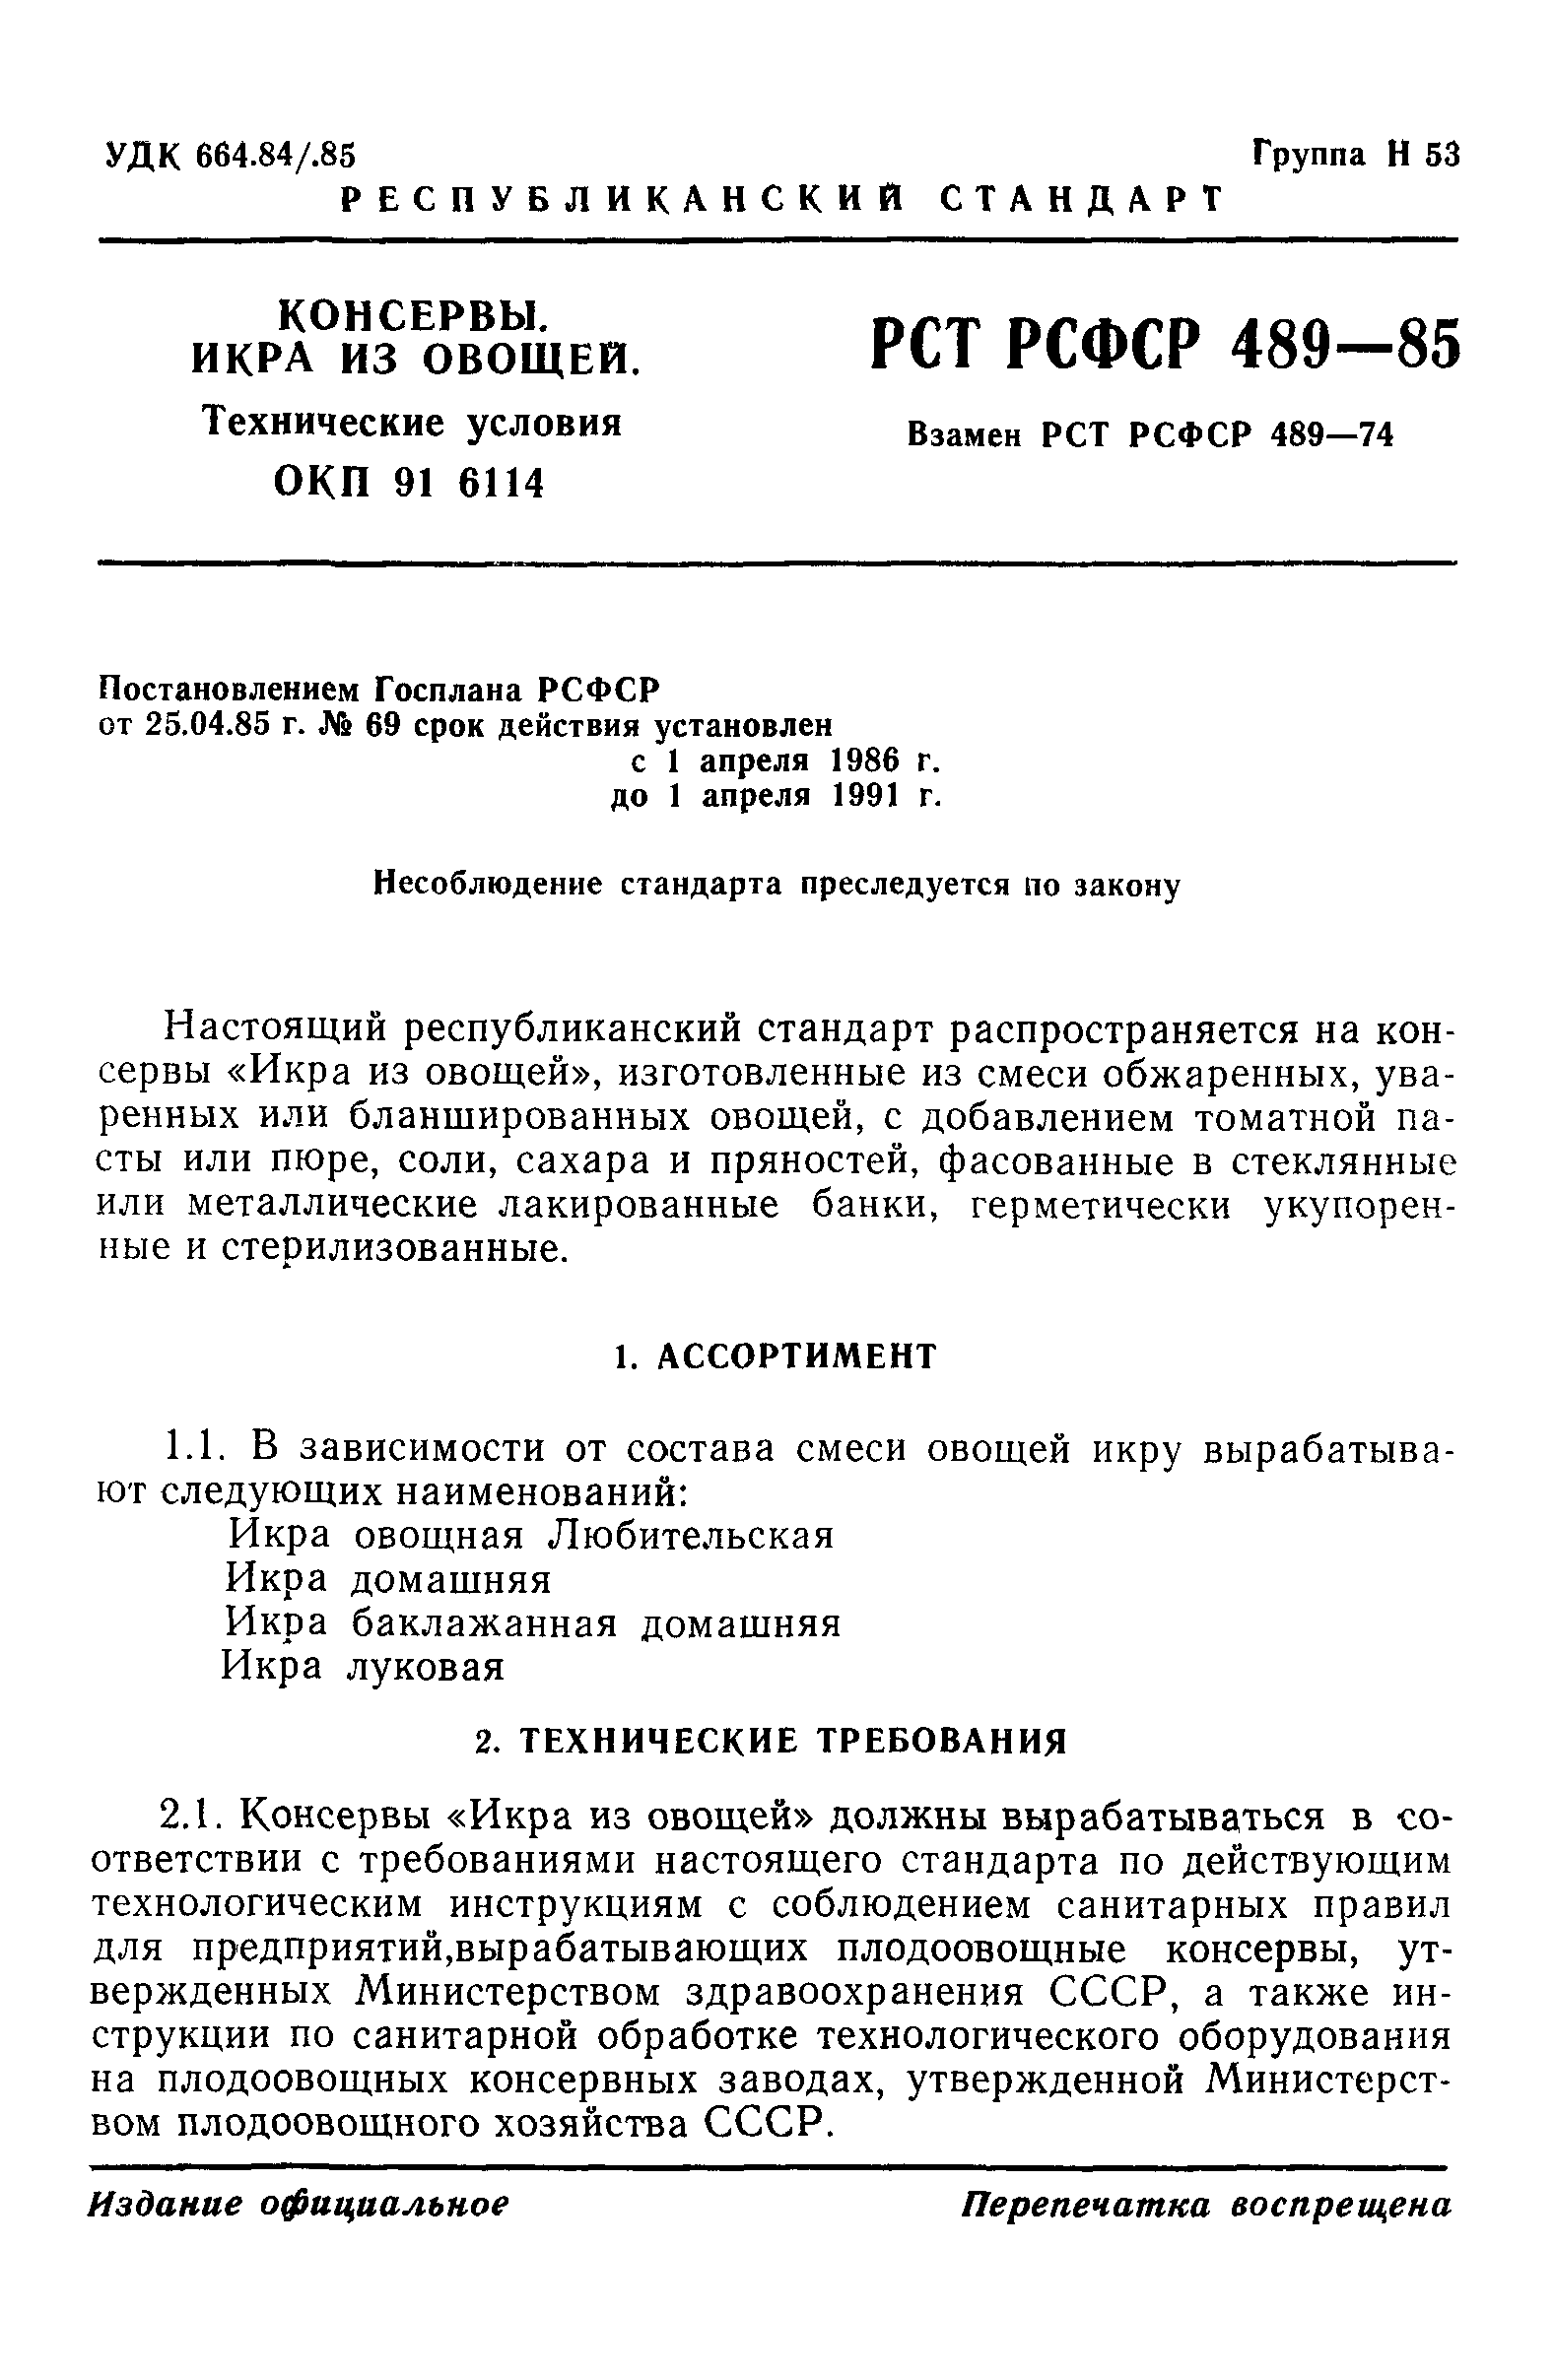 РСТ РСФСР 489-85